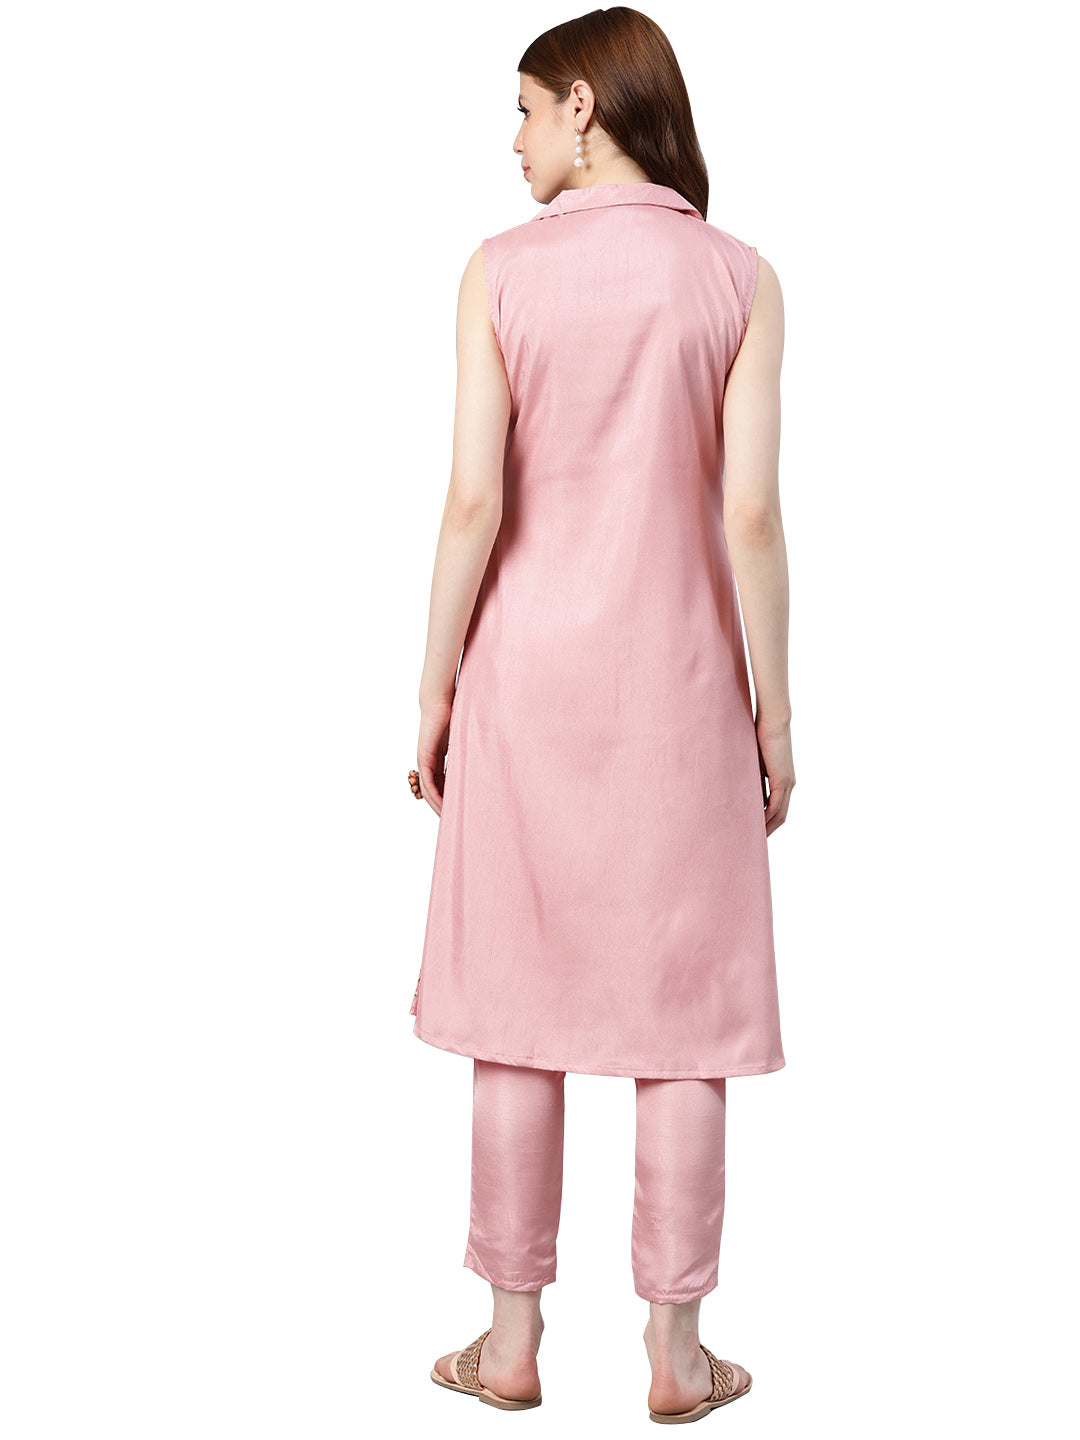 Women's Pink Poly Silk Kurta And Pant Set - Ziyaa